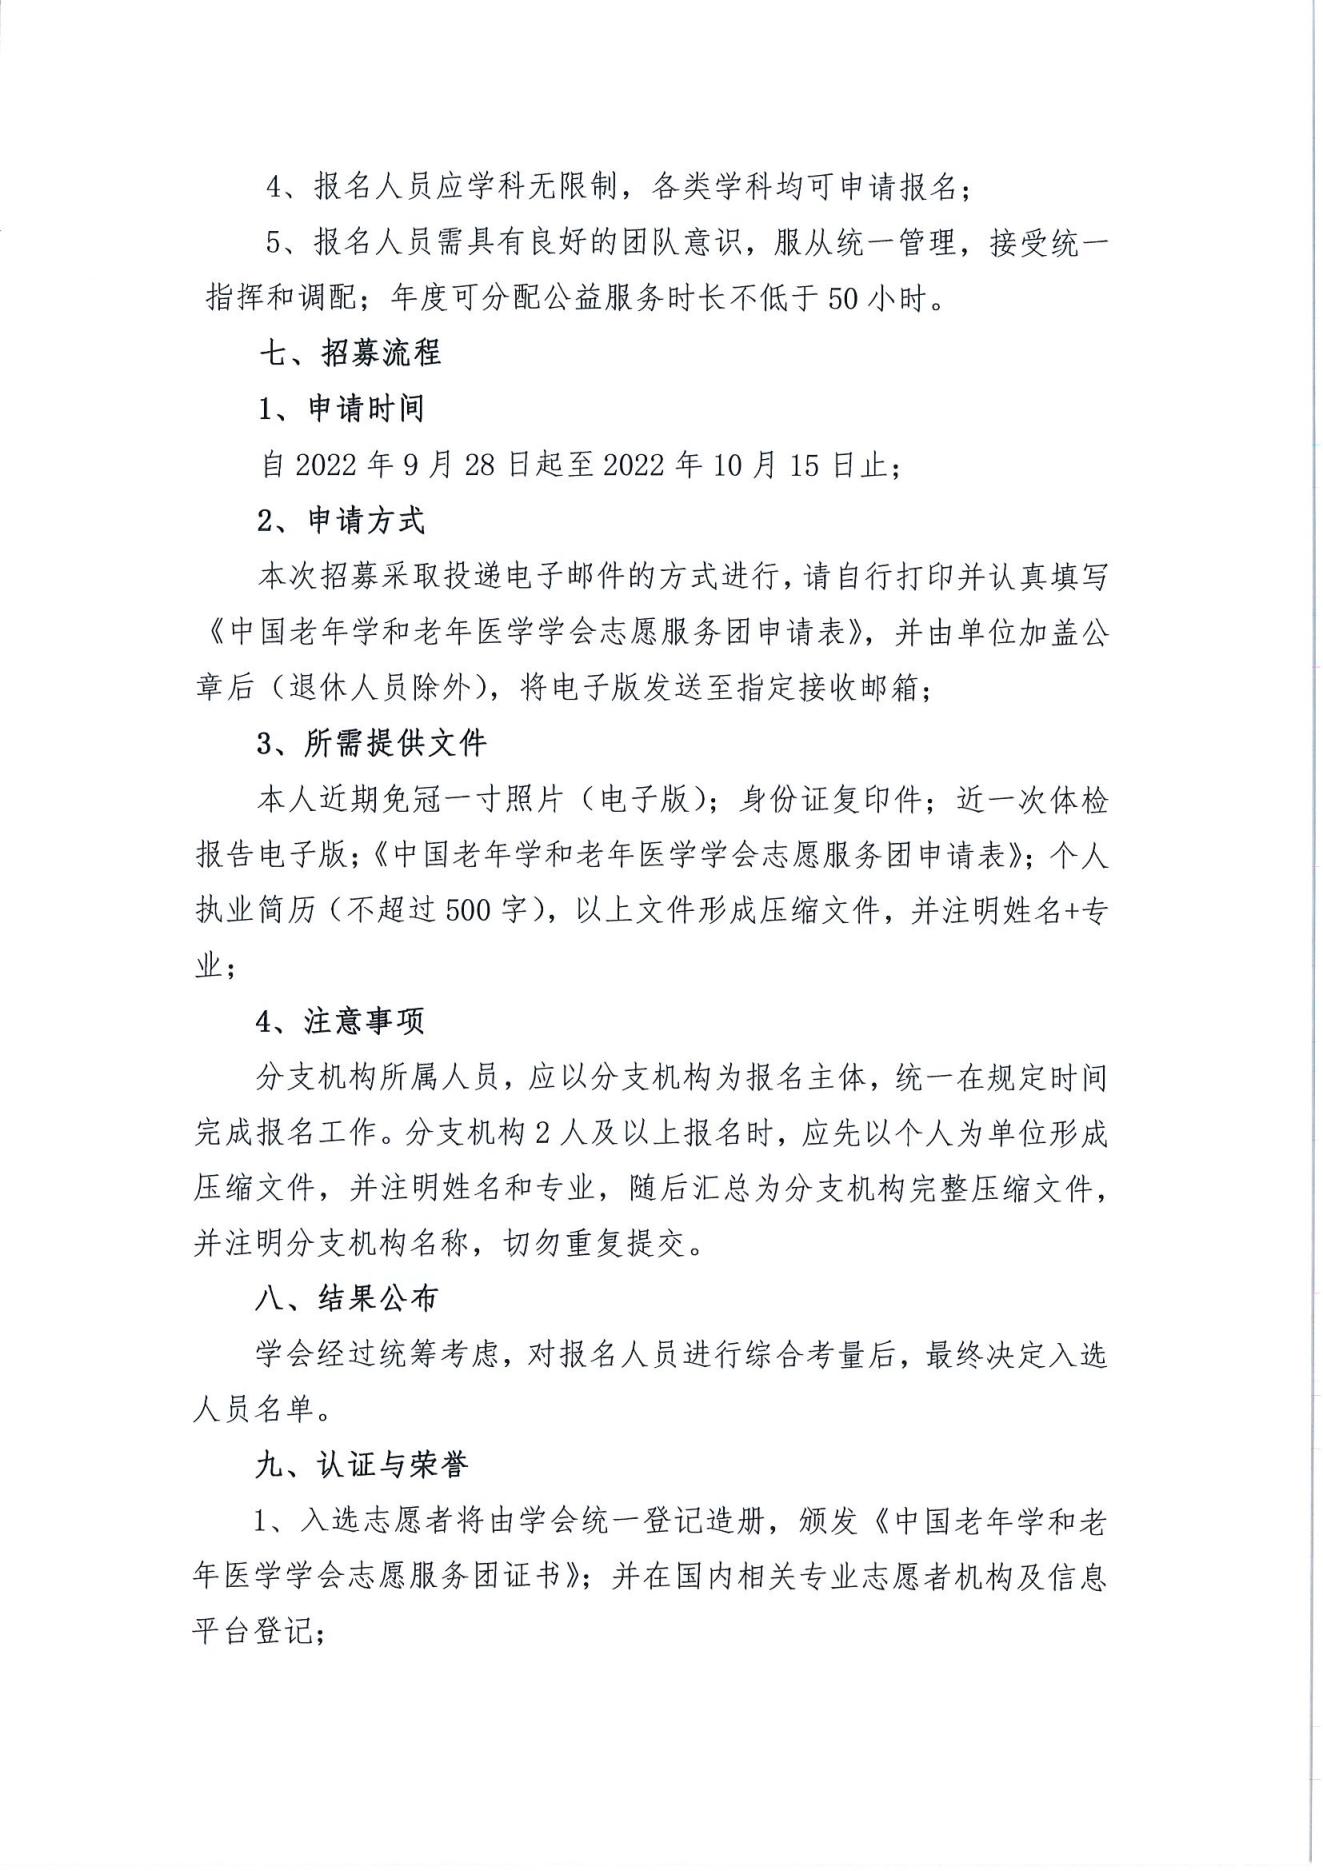 关于招募第二批中国老年学和老年医学学会志愿服务团的通知(2)_02.jpg